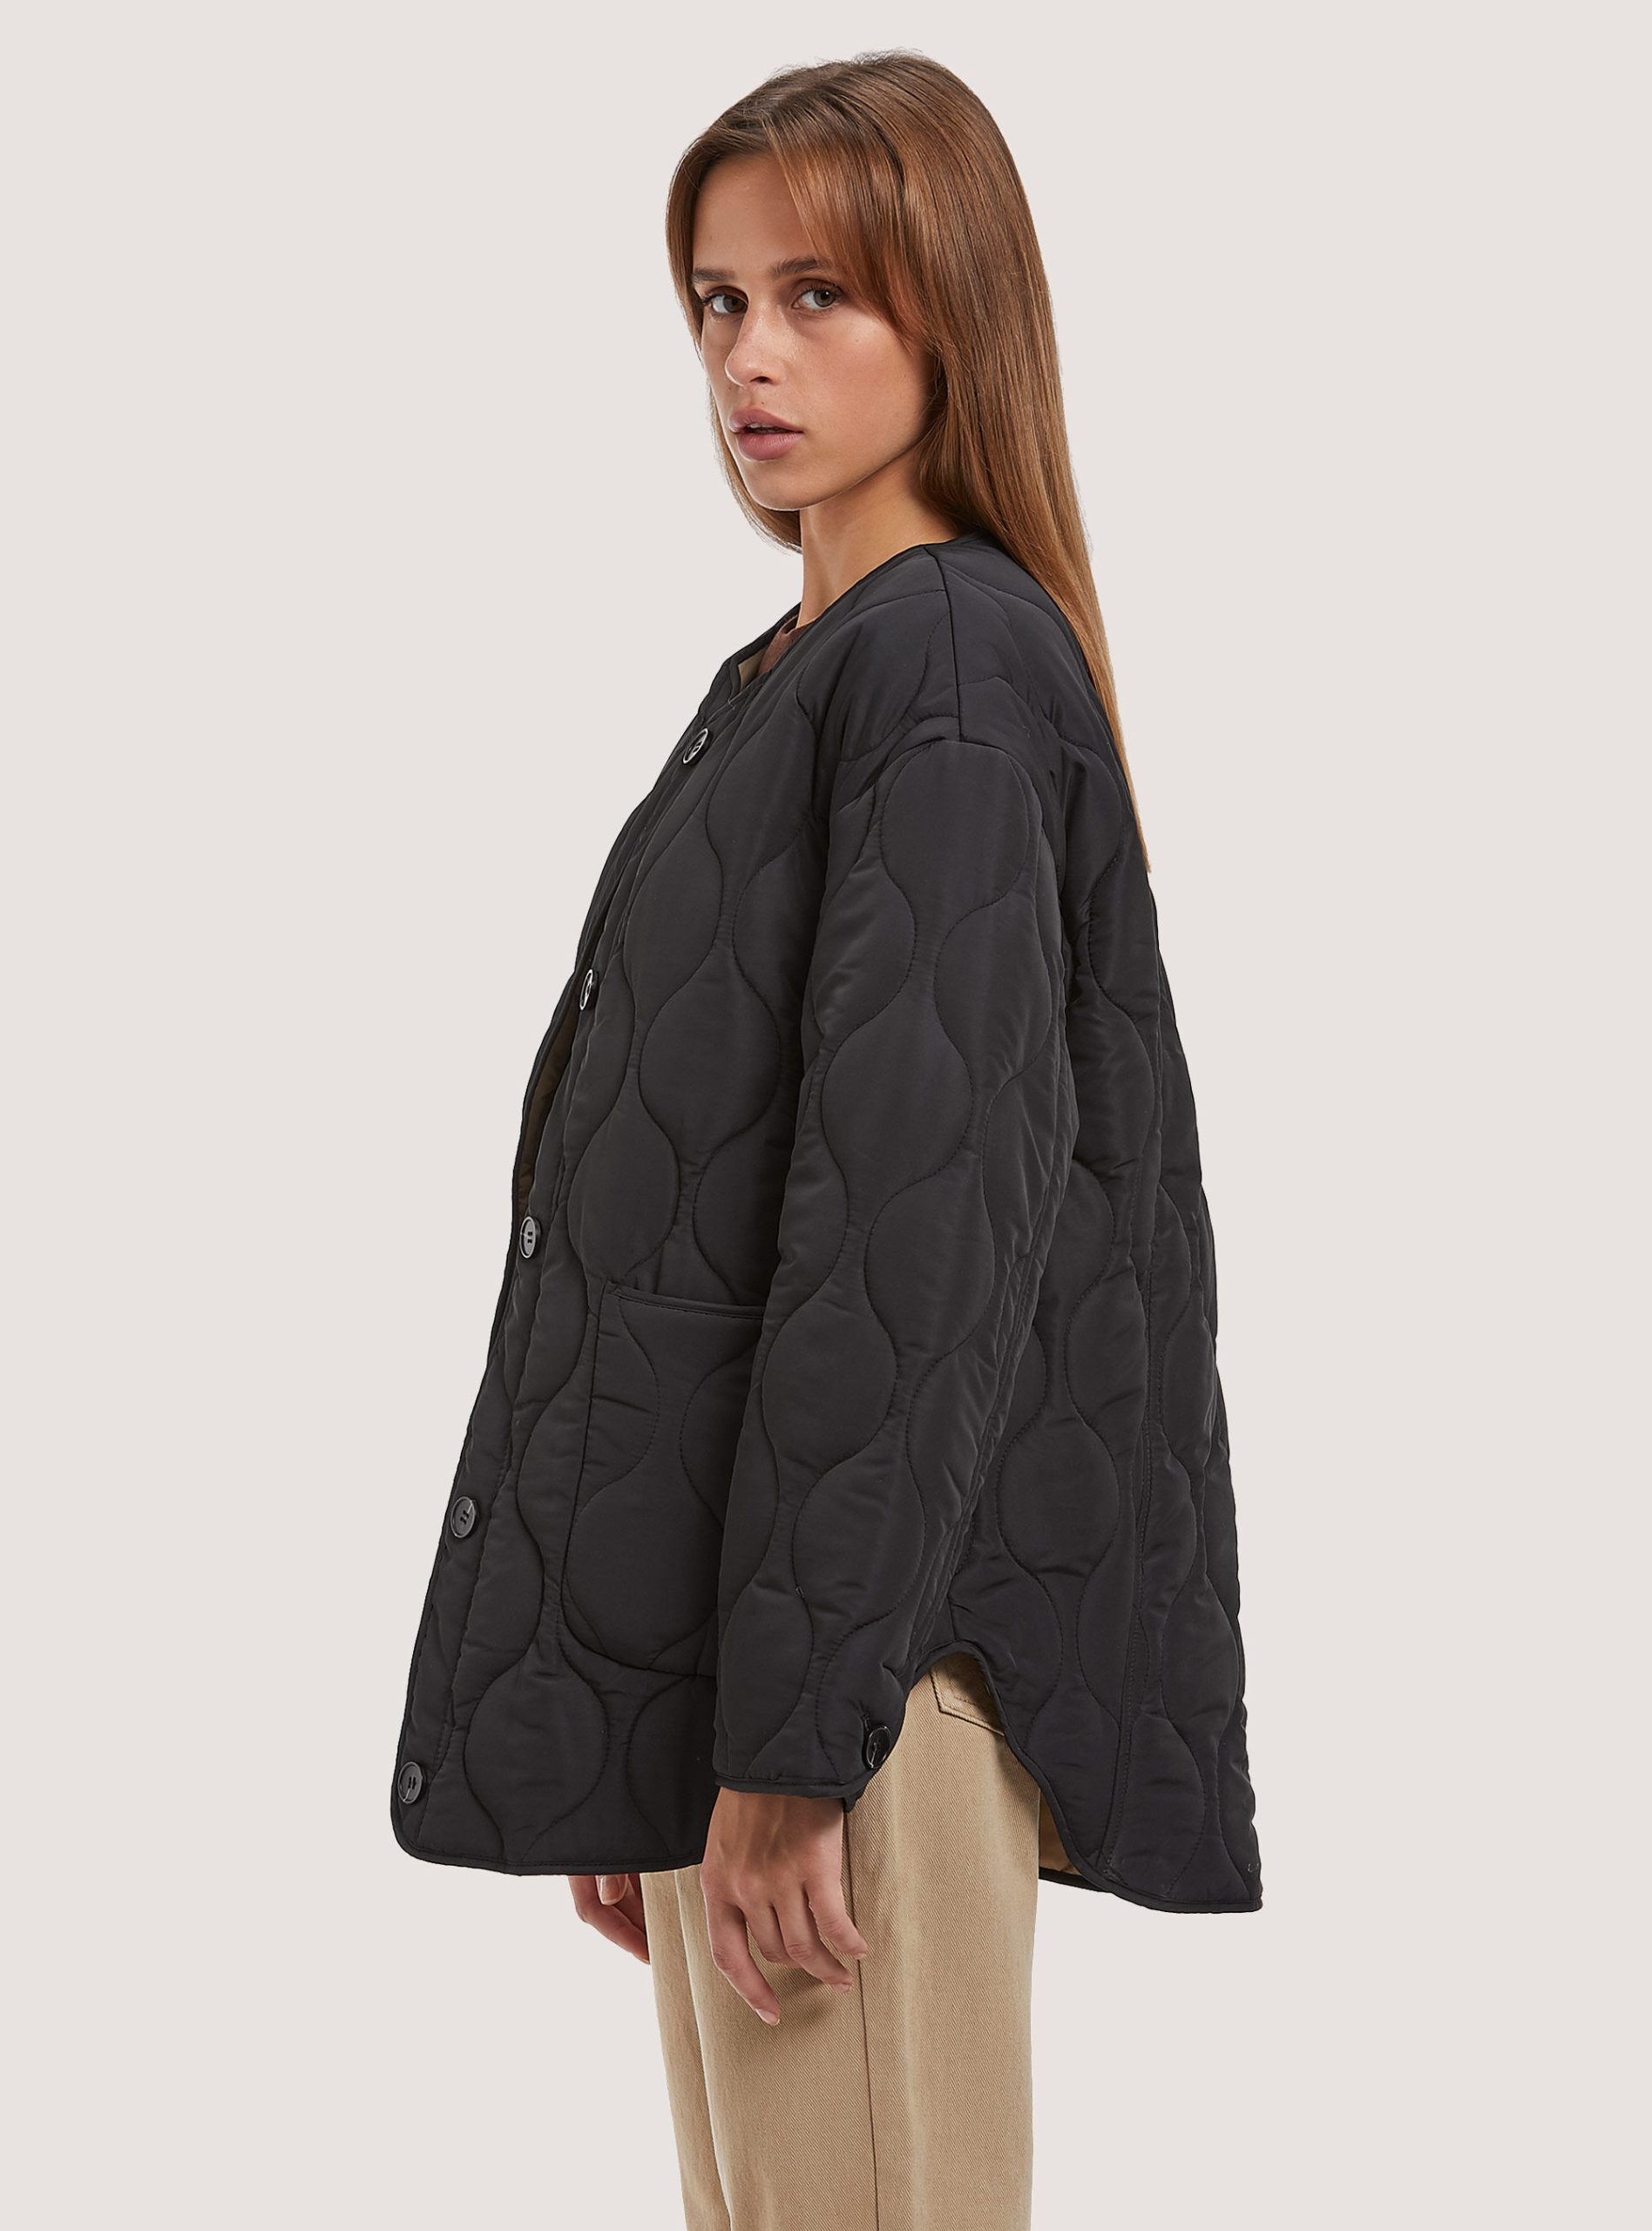 Frauen Alcott Quilted Jacket With Recycled Padding Mäntel Und Jacken Neues Produkt Bk1 Black – 2